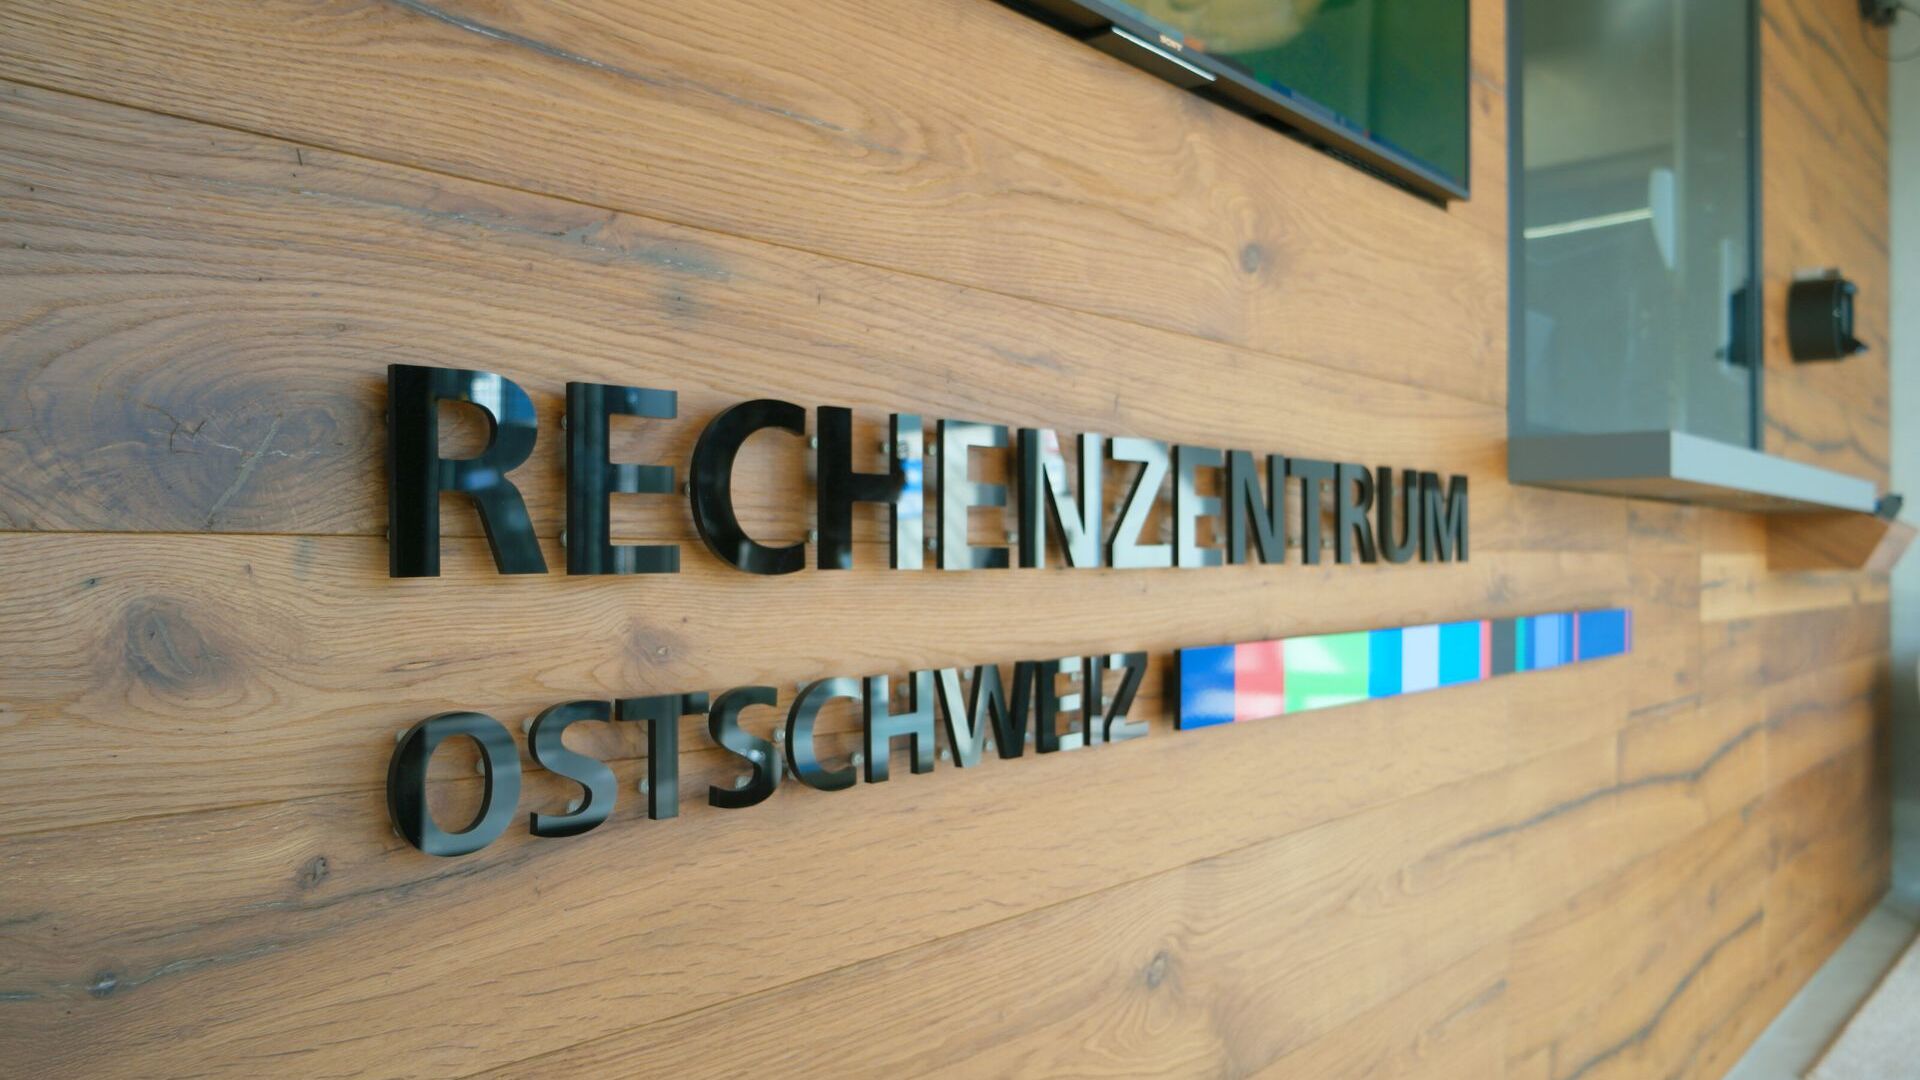 ทางเข้าภายในและเรือนเฝ้าประตูของ Rechenzentrum Ostschweiz ใน Gais ใน Appenzell Ausserrhoden